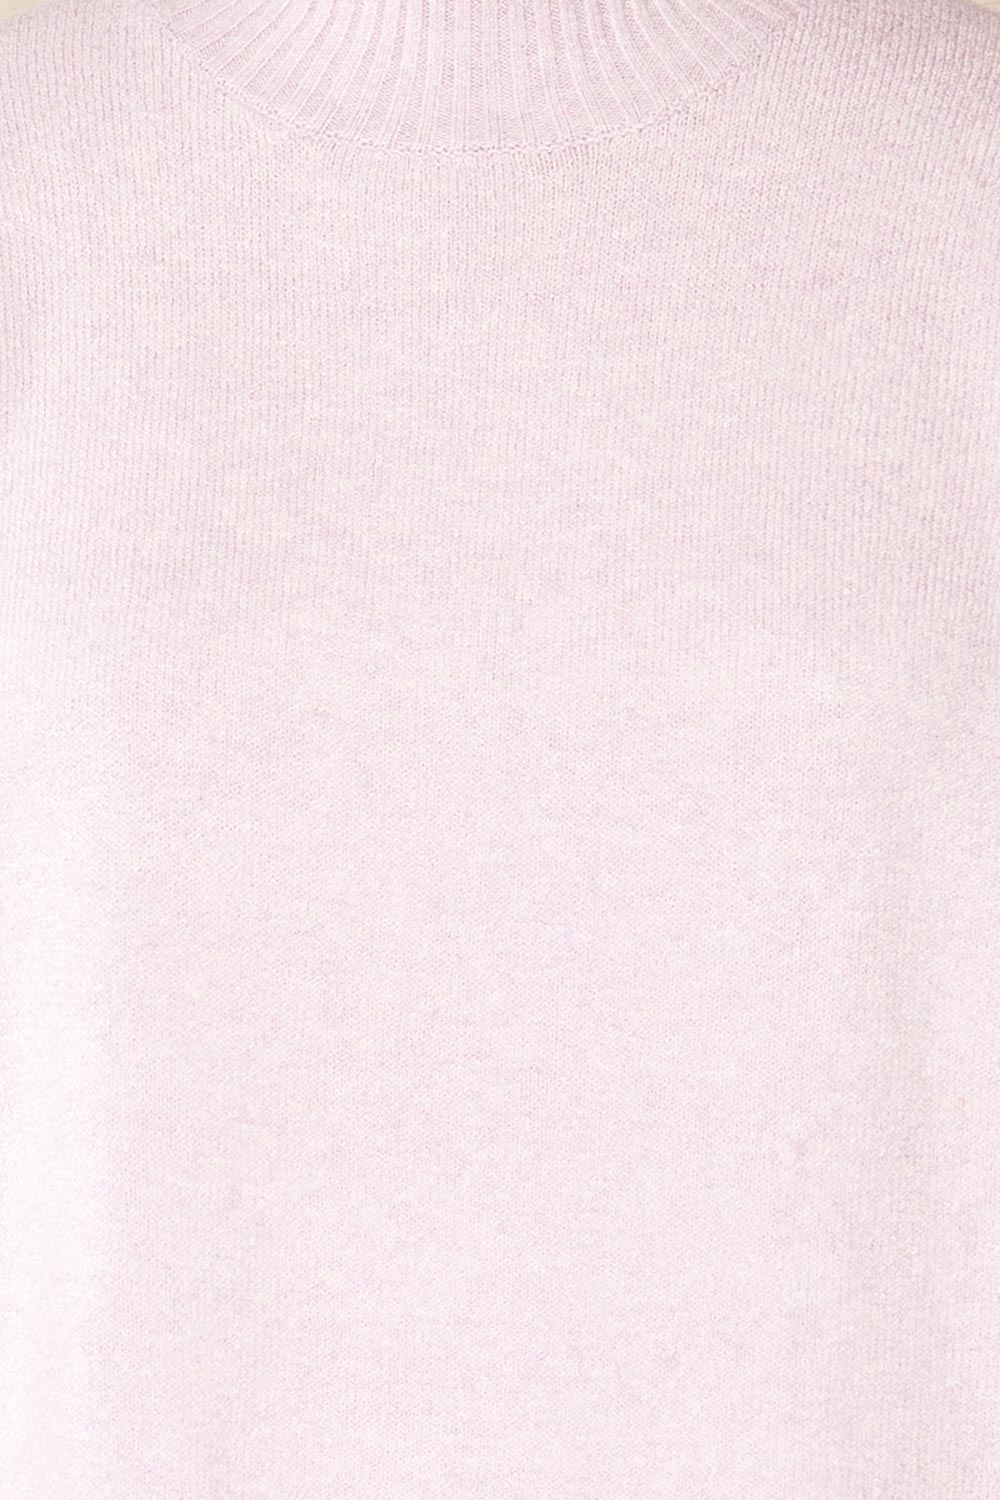 Eris Lavender Mock Neck Sweater | La petite garçonne fabric  